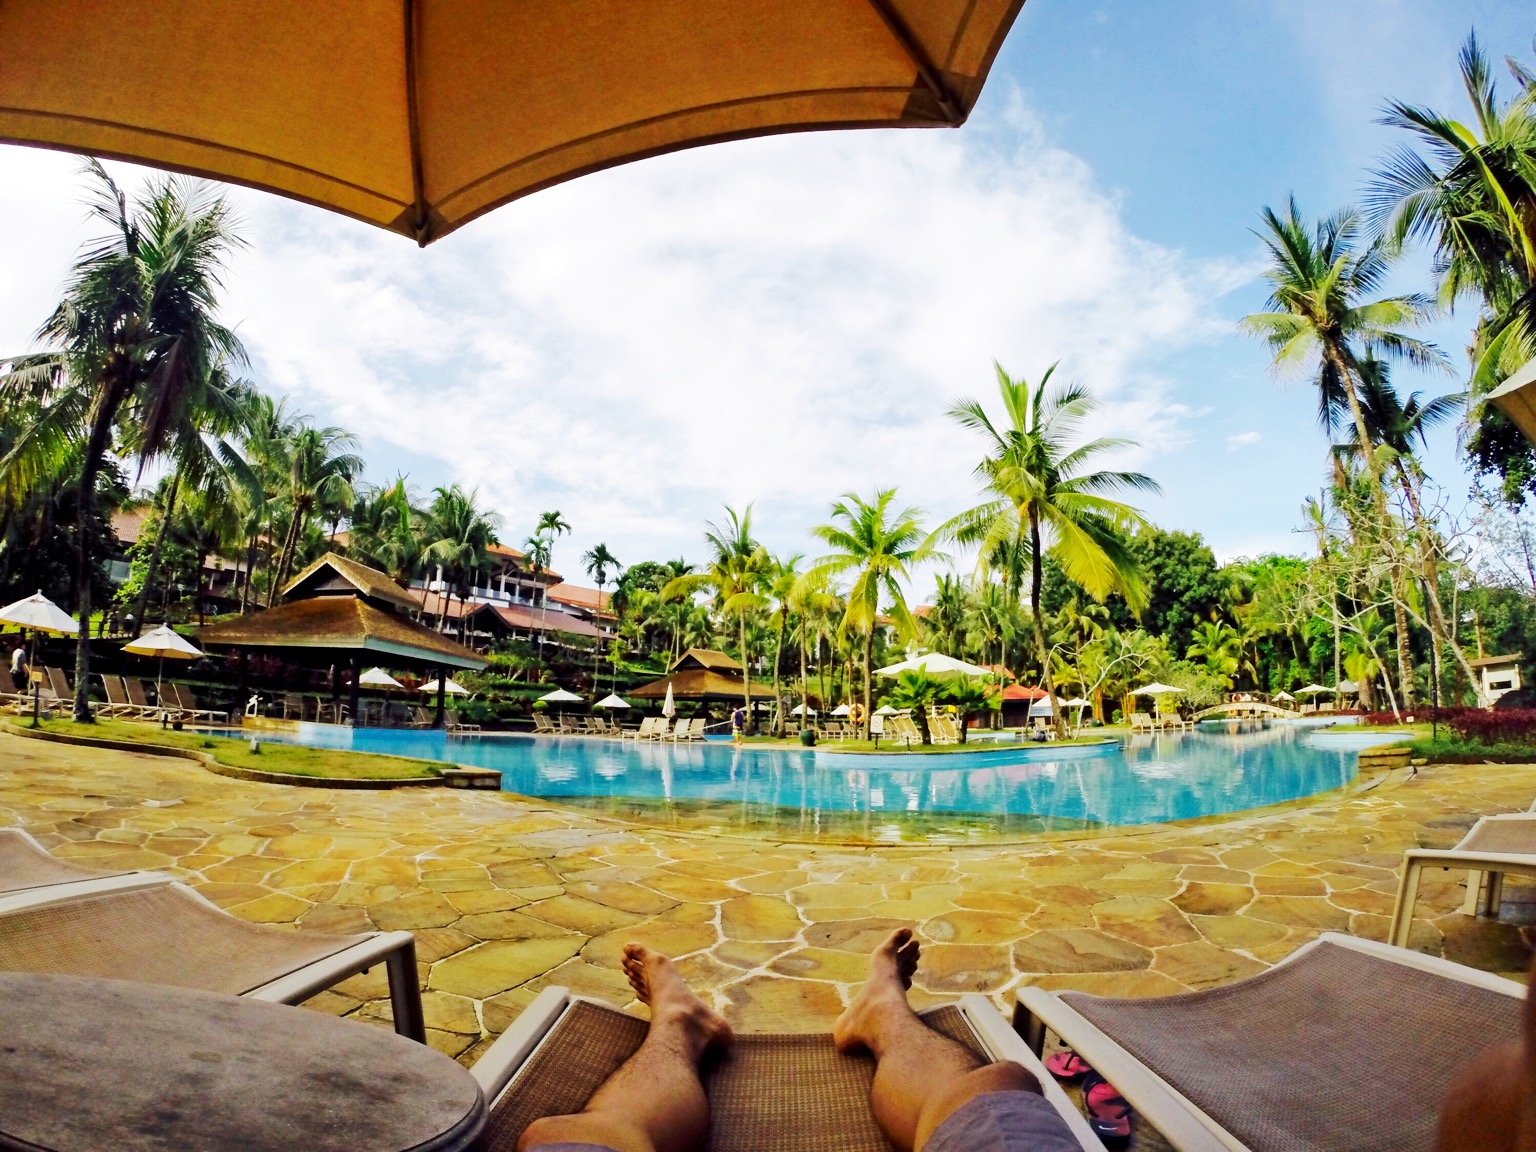 Pengunjung menikmati waktu santai di pinggir kolam renang bintan lagoon resort